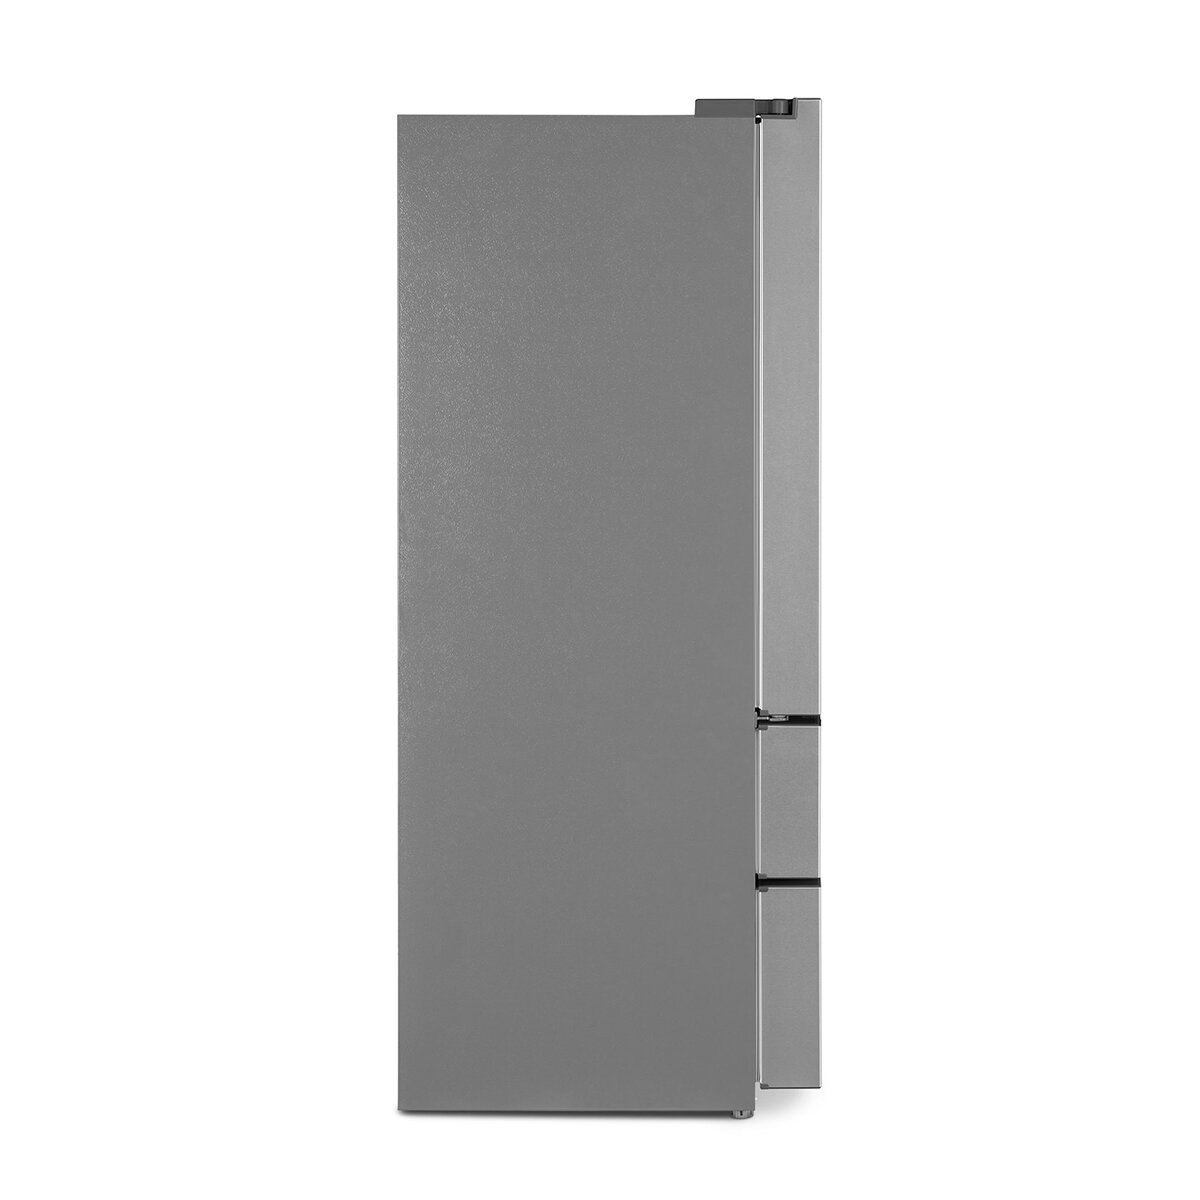 Smeg Refrigerador 22' French Door